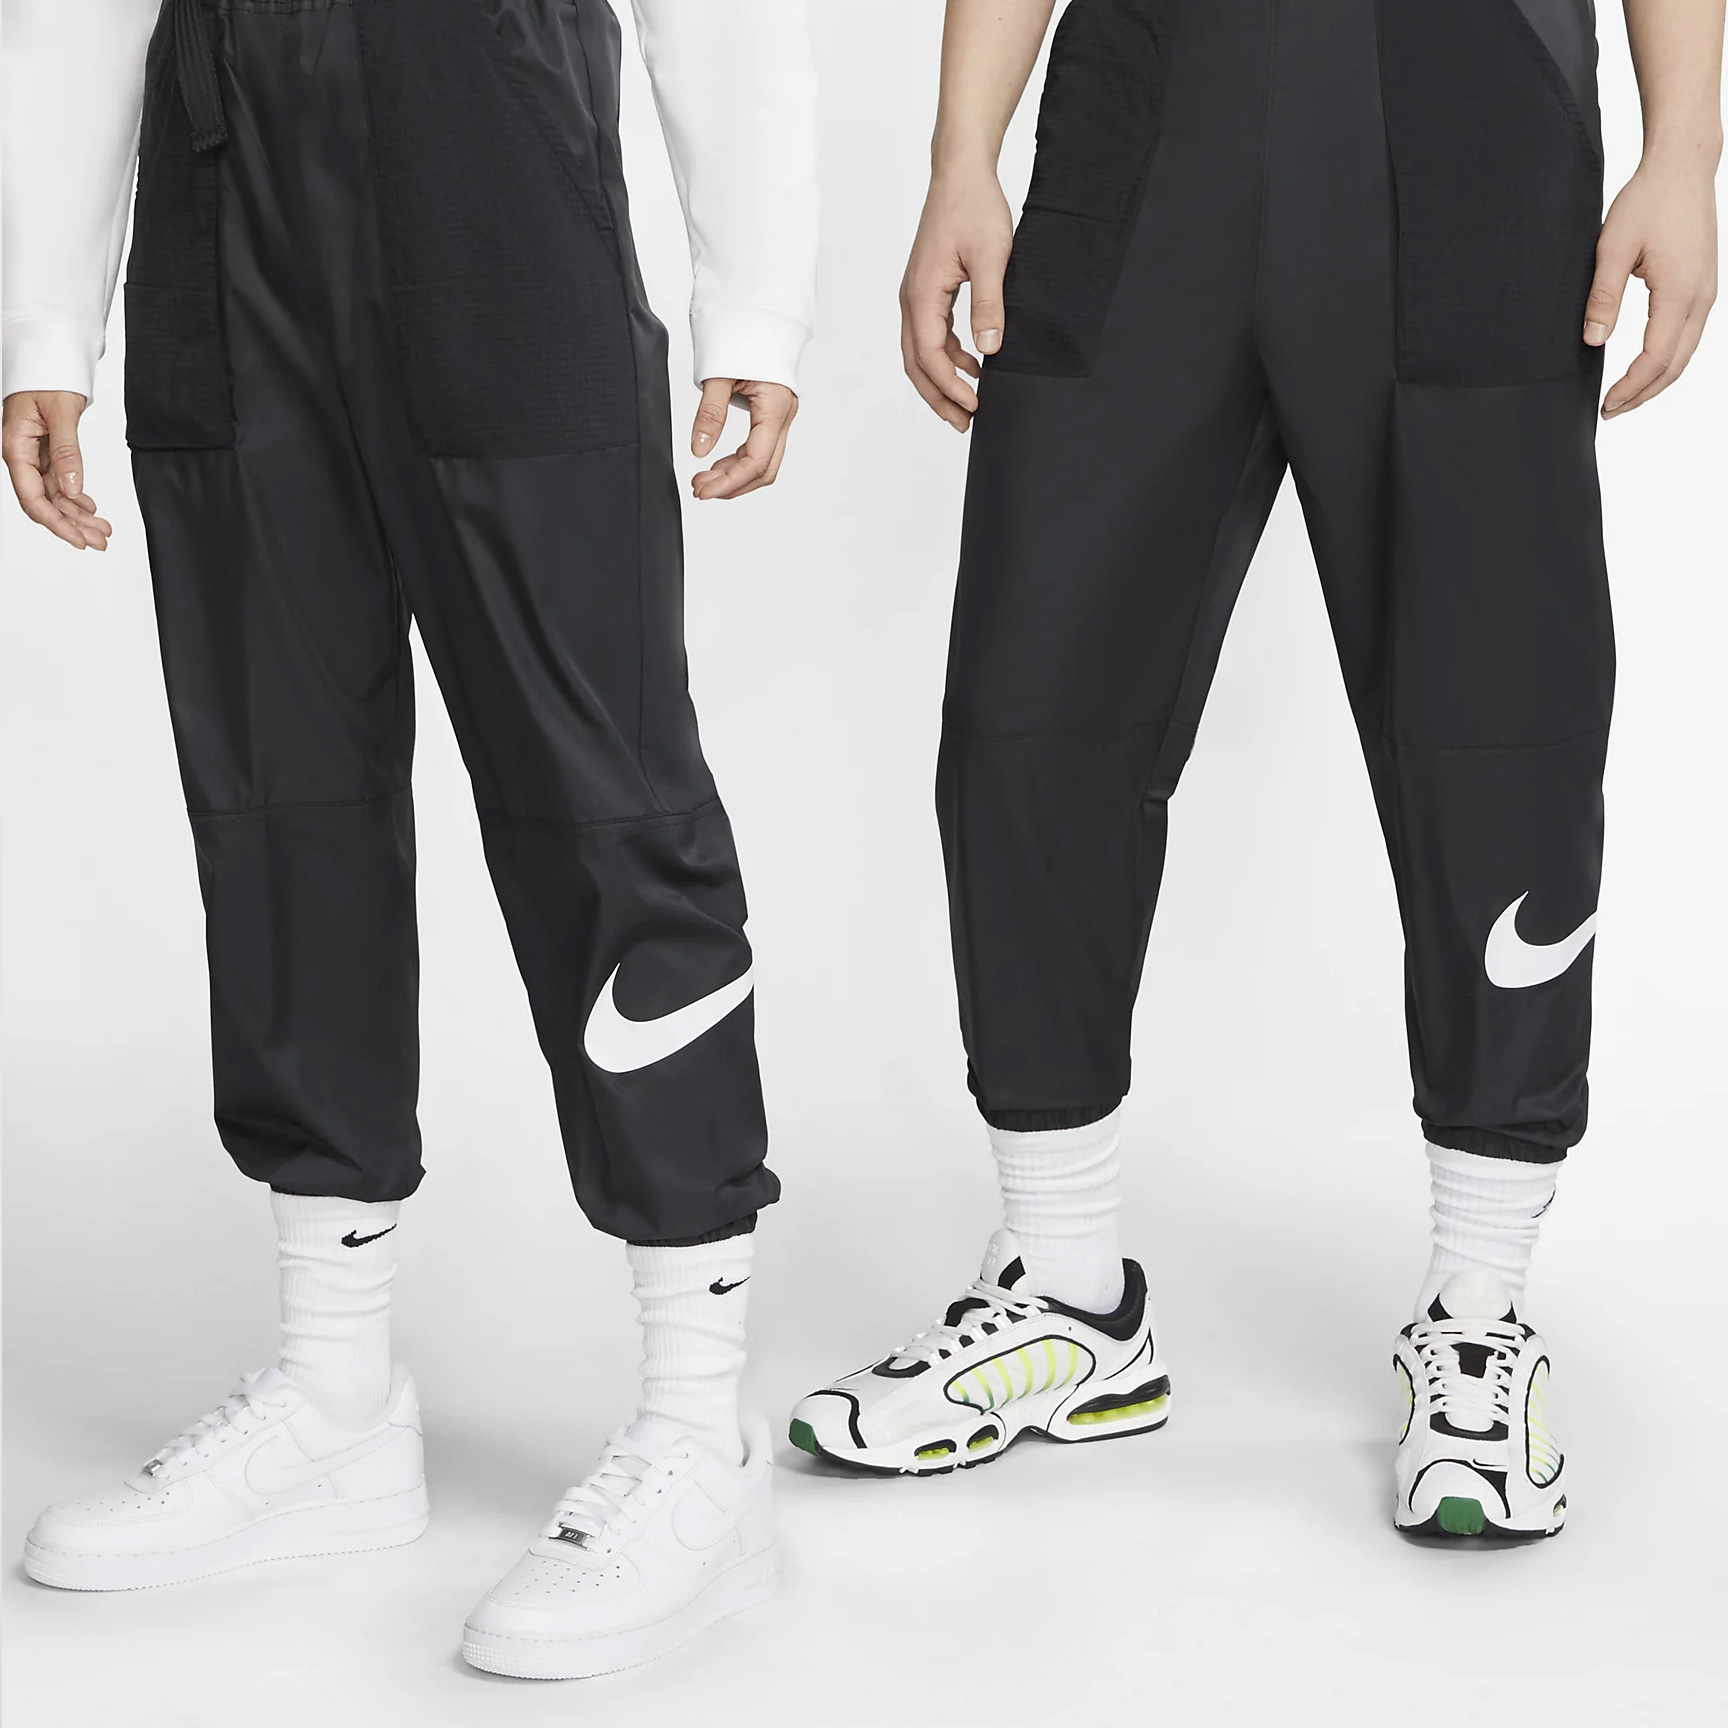 Soldes surprises Nike : Notre sélection des meilleurs produits - WAVE®